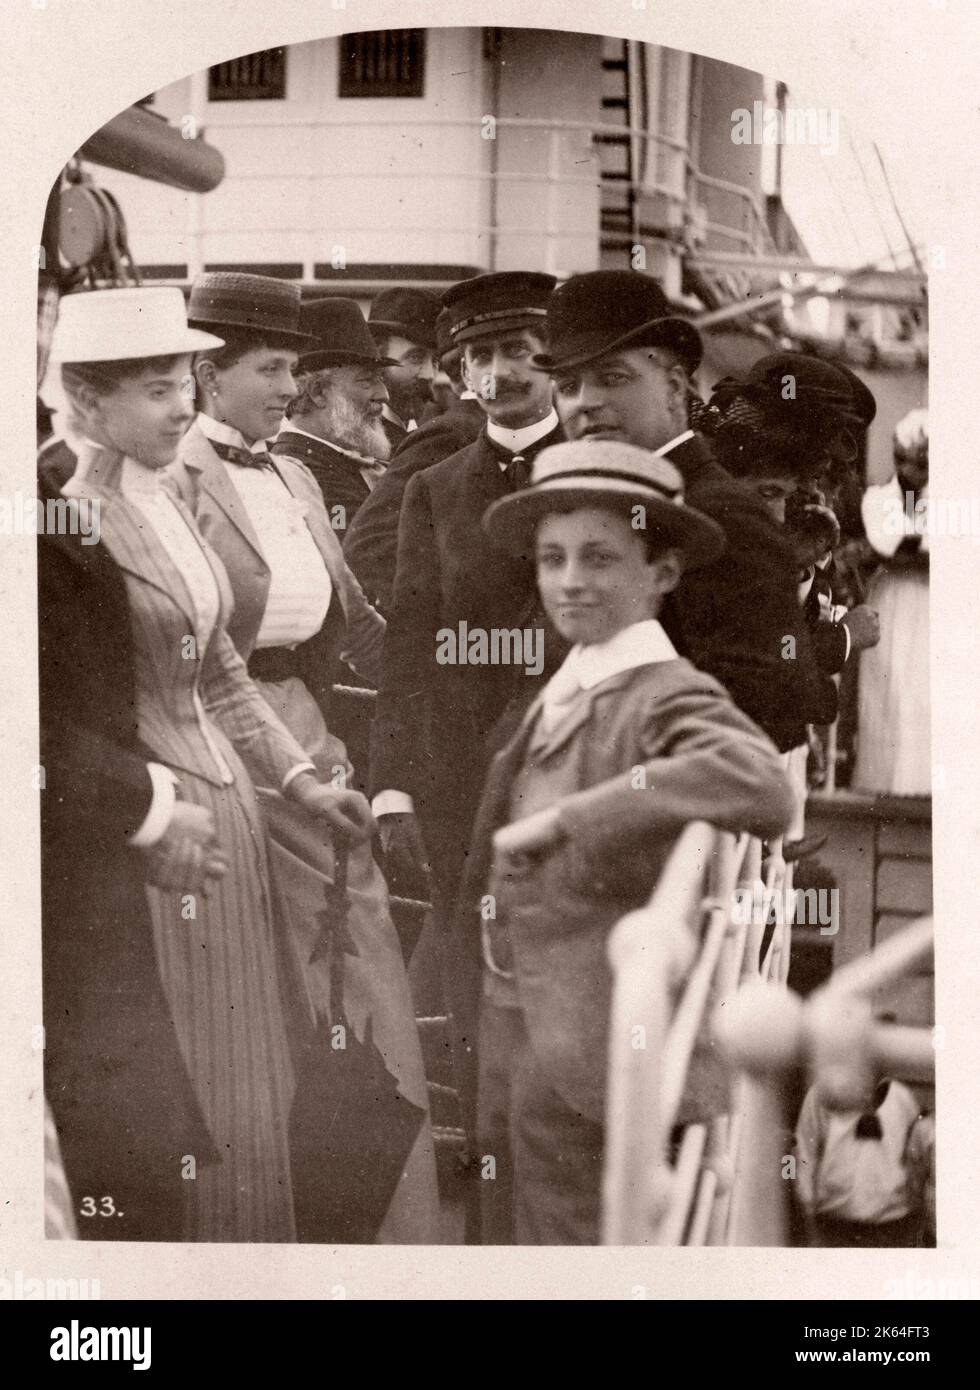 1889 Photographie - RMS - Teutonic à partir d'un album d'images concernant le lancement du navire, qui a été construit par Harland and Wolff de Belfast, pour la White Star Line - plus tard pour atteindre une certaine notoriété en tant que le propriétaire du Titanic. L'album montre l'intérieur de la barque, membre de l'équipage d'essai, croisières, y compris une visite à bord par le Kaiser allemand et Prince de Galles, ainsi que de nombreuses images d'autres visiteurs. Cette image - Visite au navire par le Prince Edward, prince de Galles, l'empereur allemand Guillaume II, le Prince Henri de Prusse et le Prince Albert Victor Banque D'Images